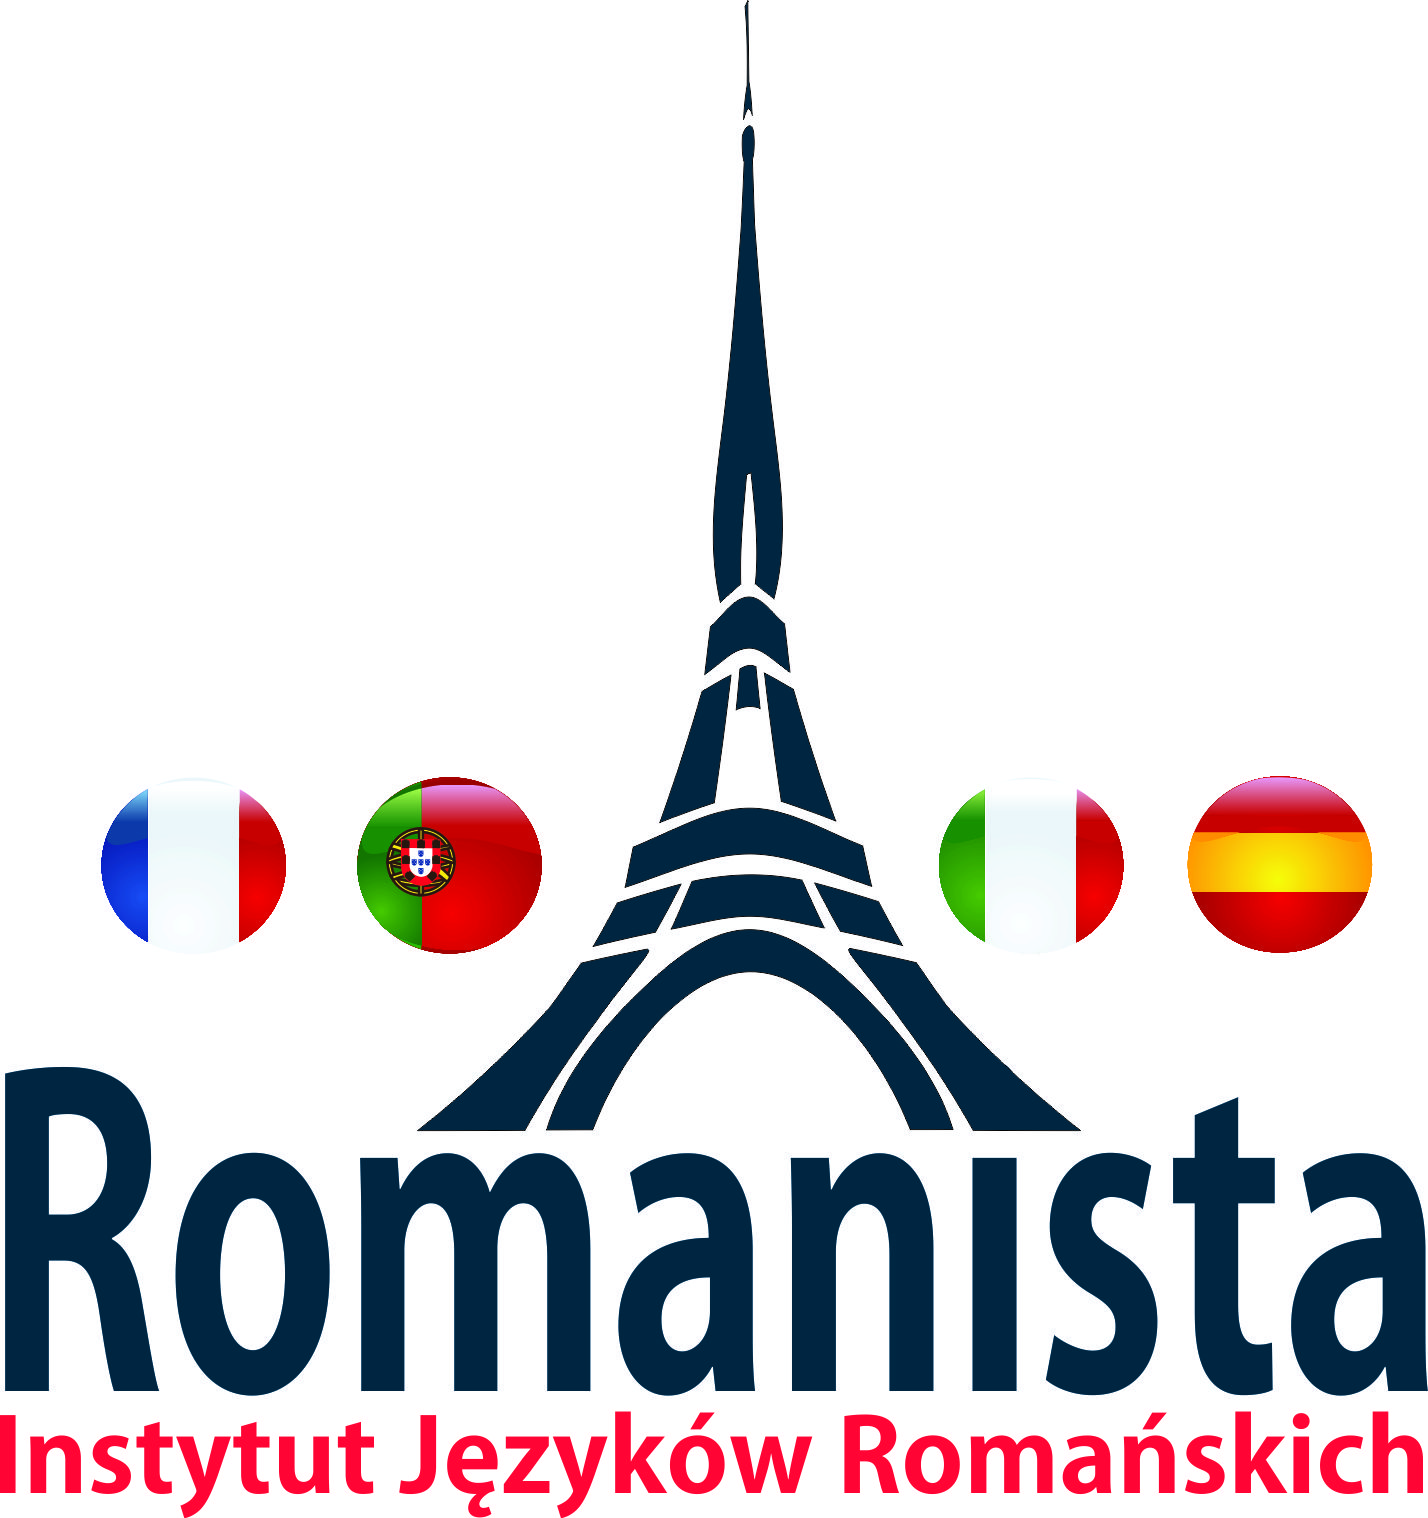 Romanista Instytut Języków Romańskich